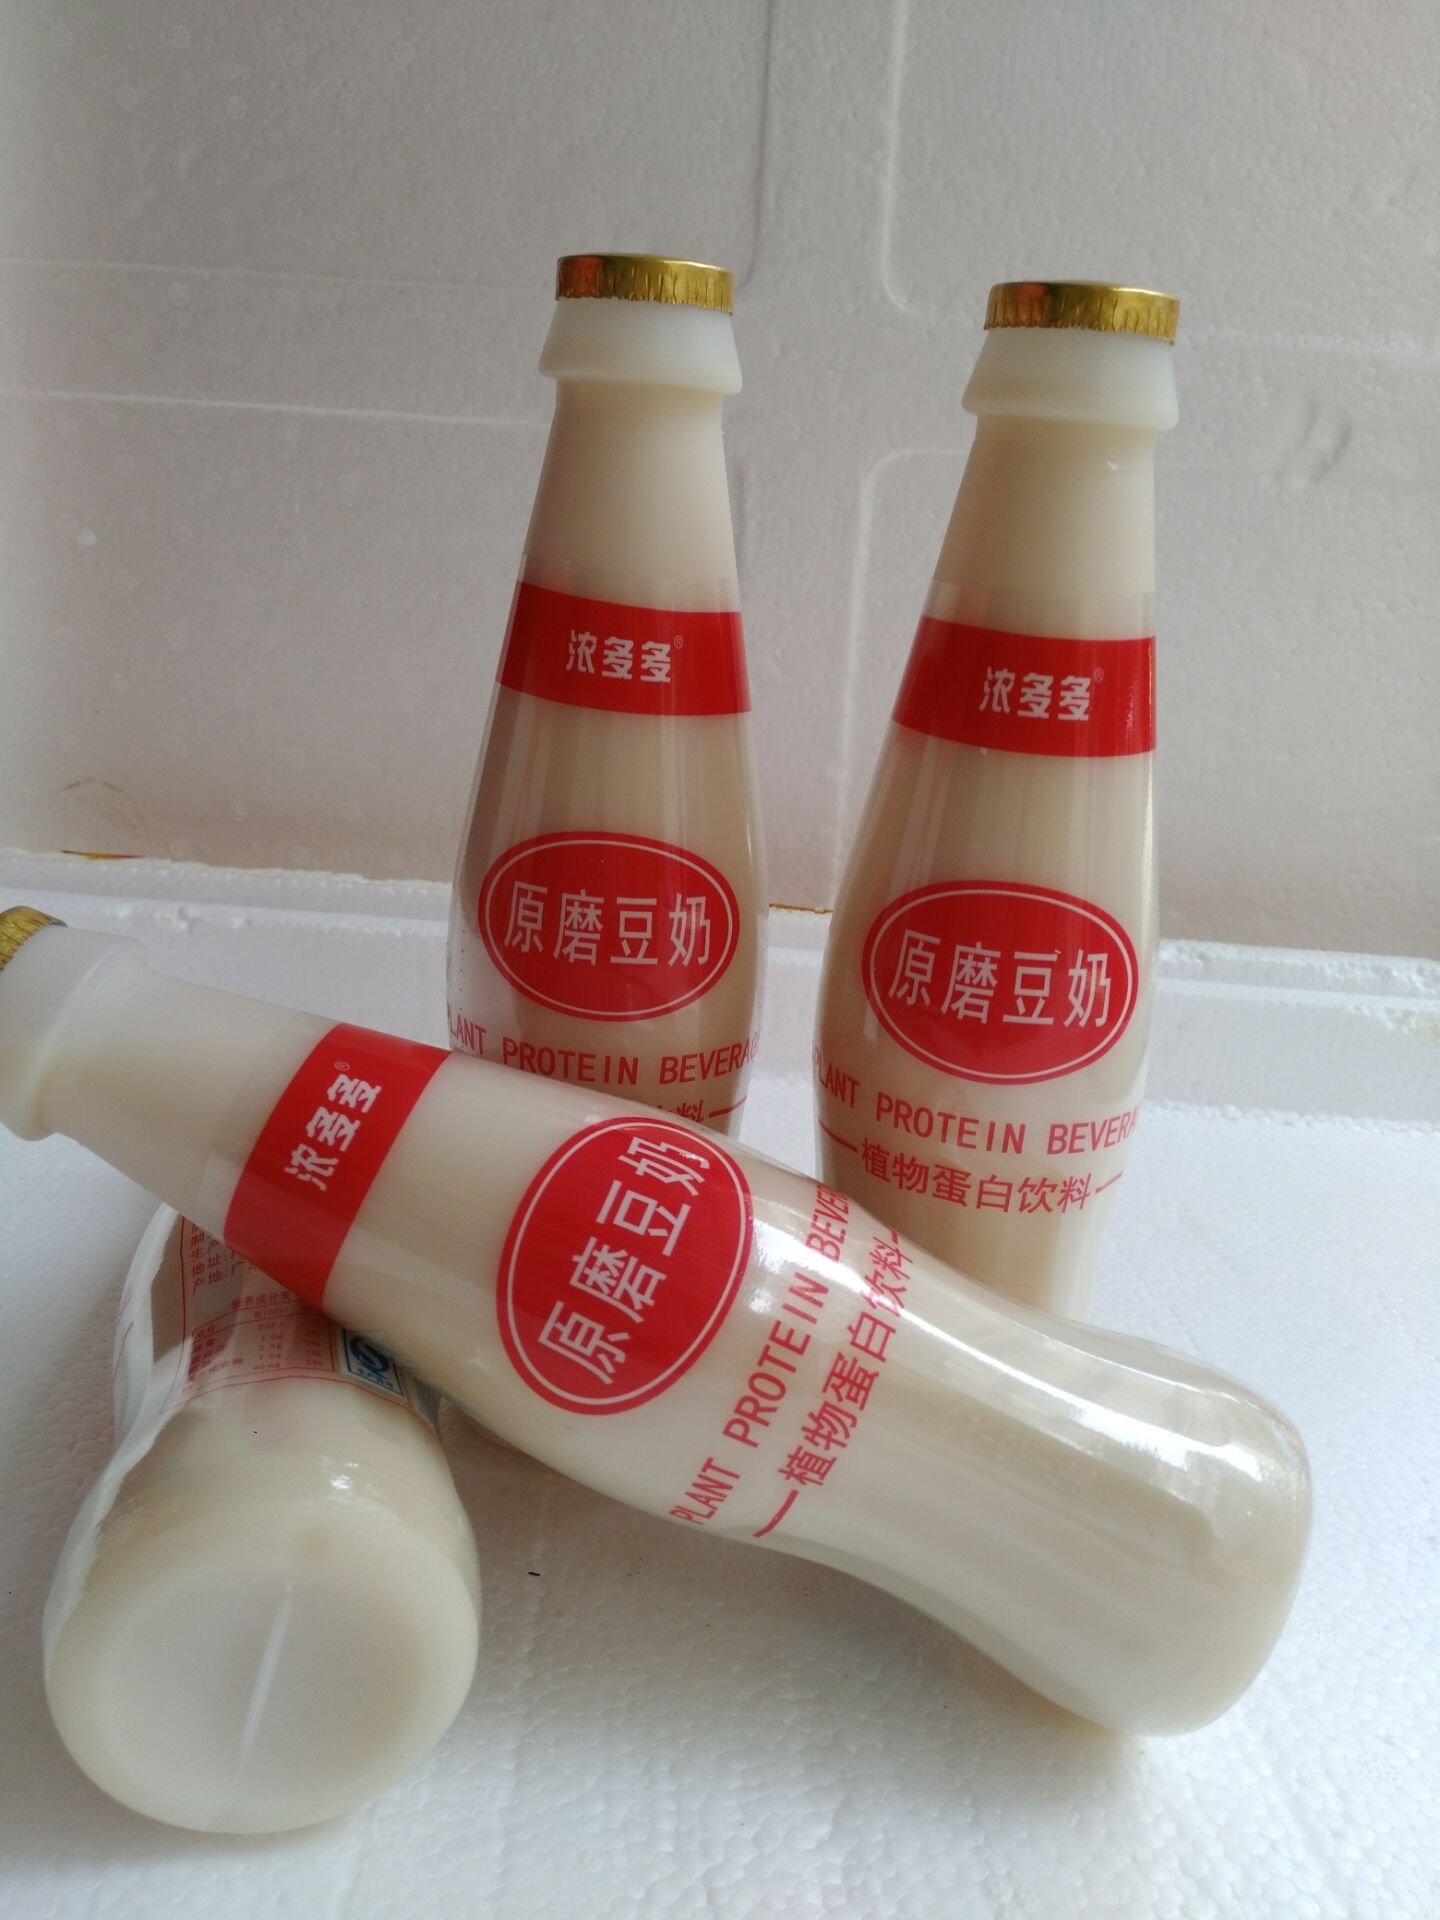 特价浓多多原磨豆奶饮料 非转基因植物蛋白饮品330ml*6瓶装包邮